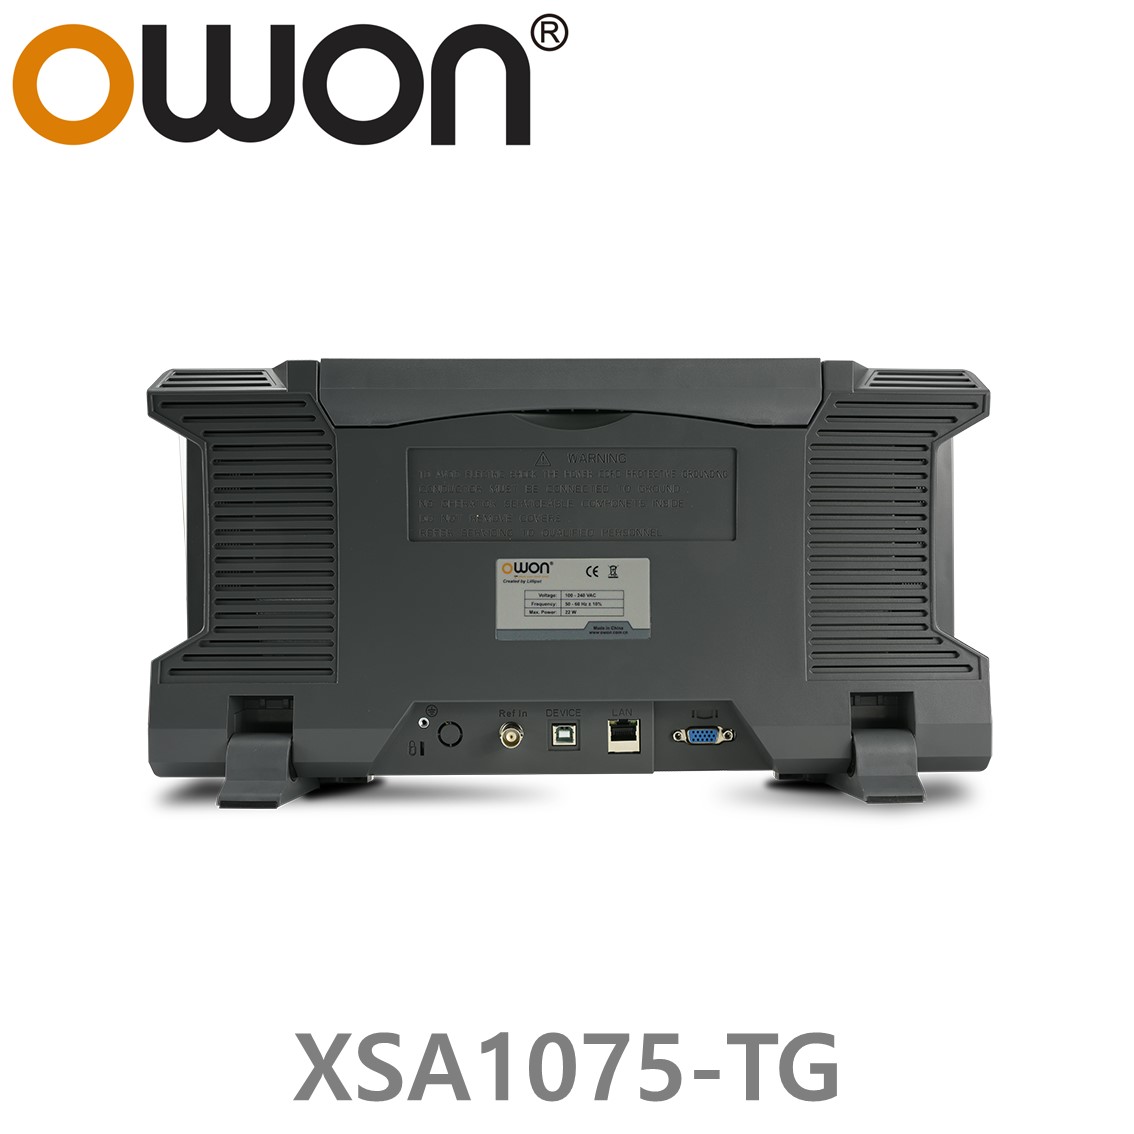 [ OWON ] XSA1075-TG 스펙트럼 아날라이저 9kHz~7.5GHz 트래킹 제너레이터